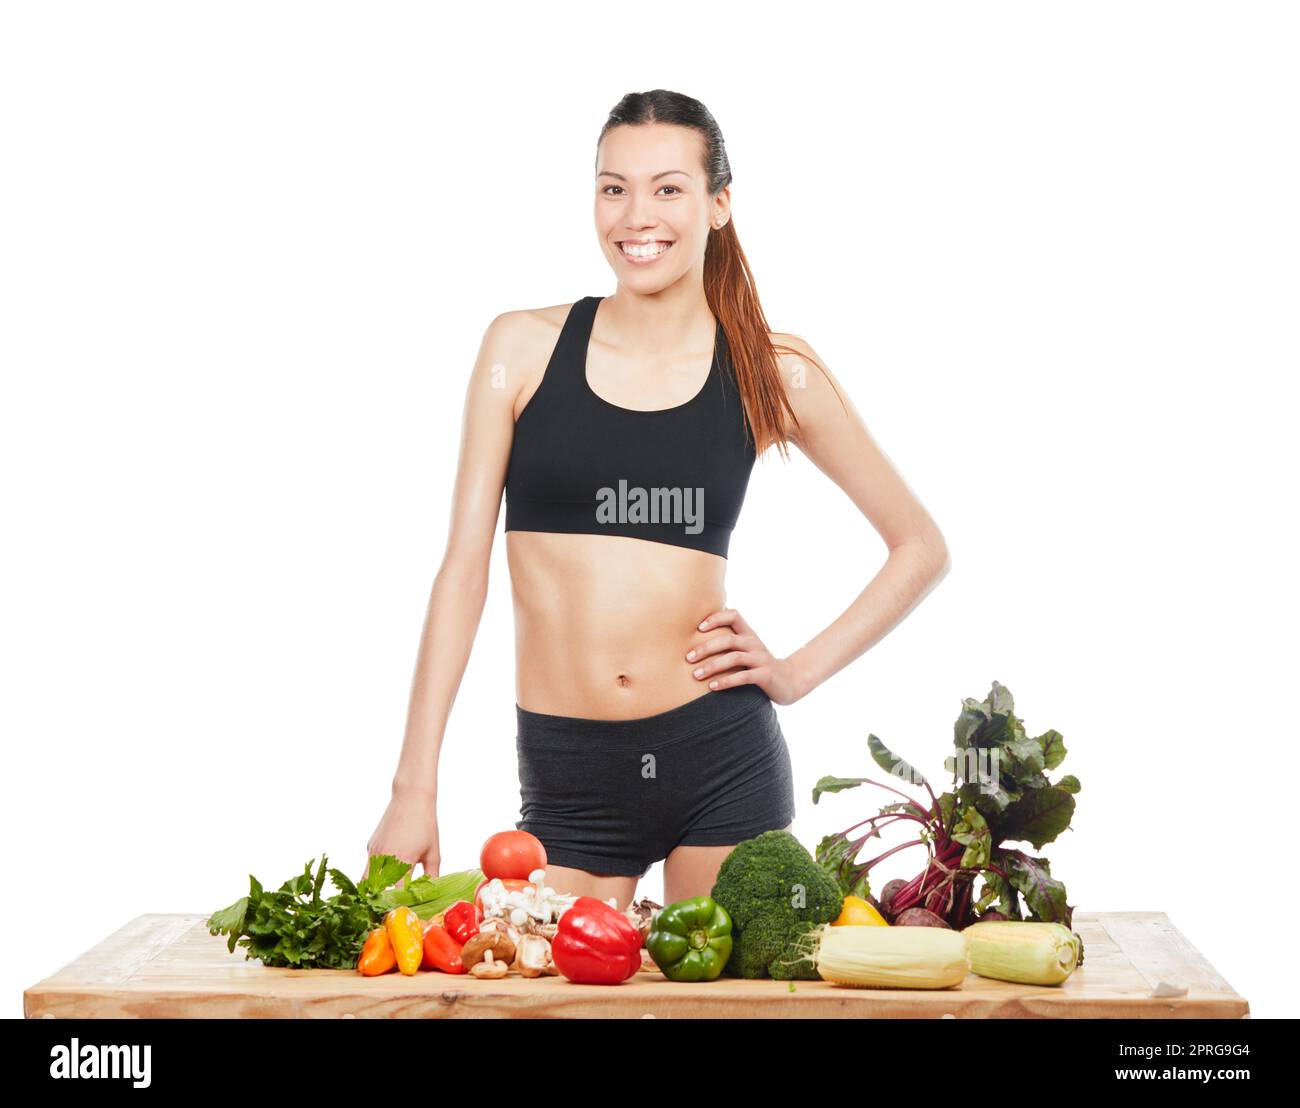 Votre corps vous remerciera de manger sainement. Studio portrait d'une jeune femme attrayante posant avec une table pleine de légumes sur un fond blanc. Banque D'Images